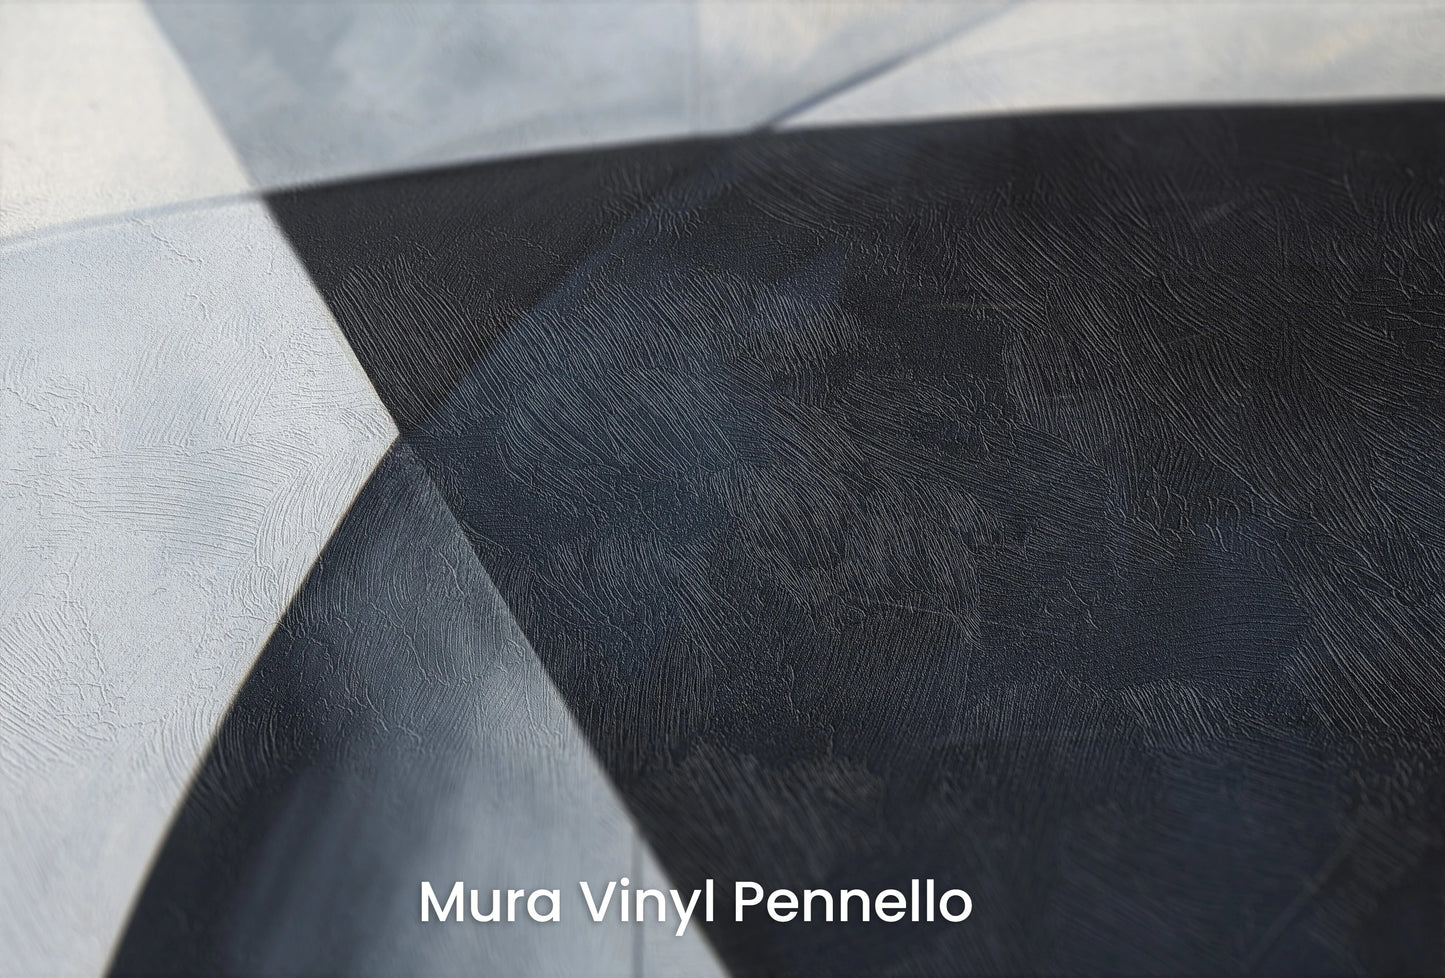 Zbliżenie na artystyczną fototapetę o nazwie Abstract Curves na podłożu Mura Vinyl Pennello - faktura pociągnięć pędzla malarskiego.